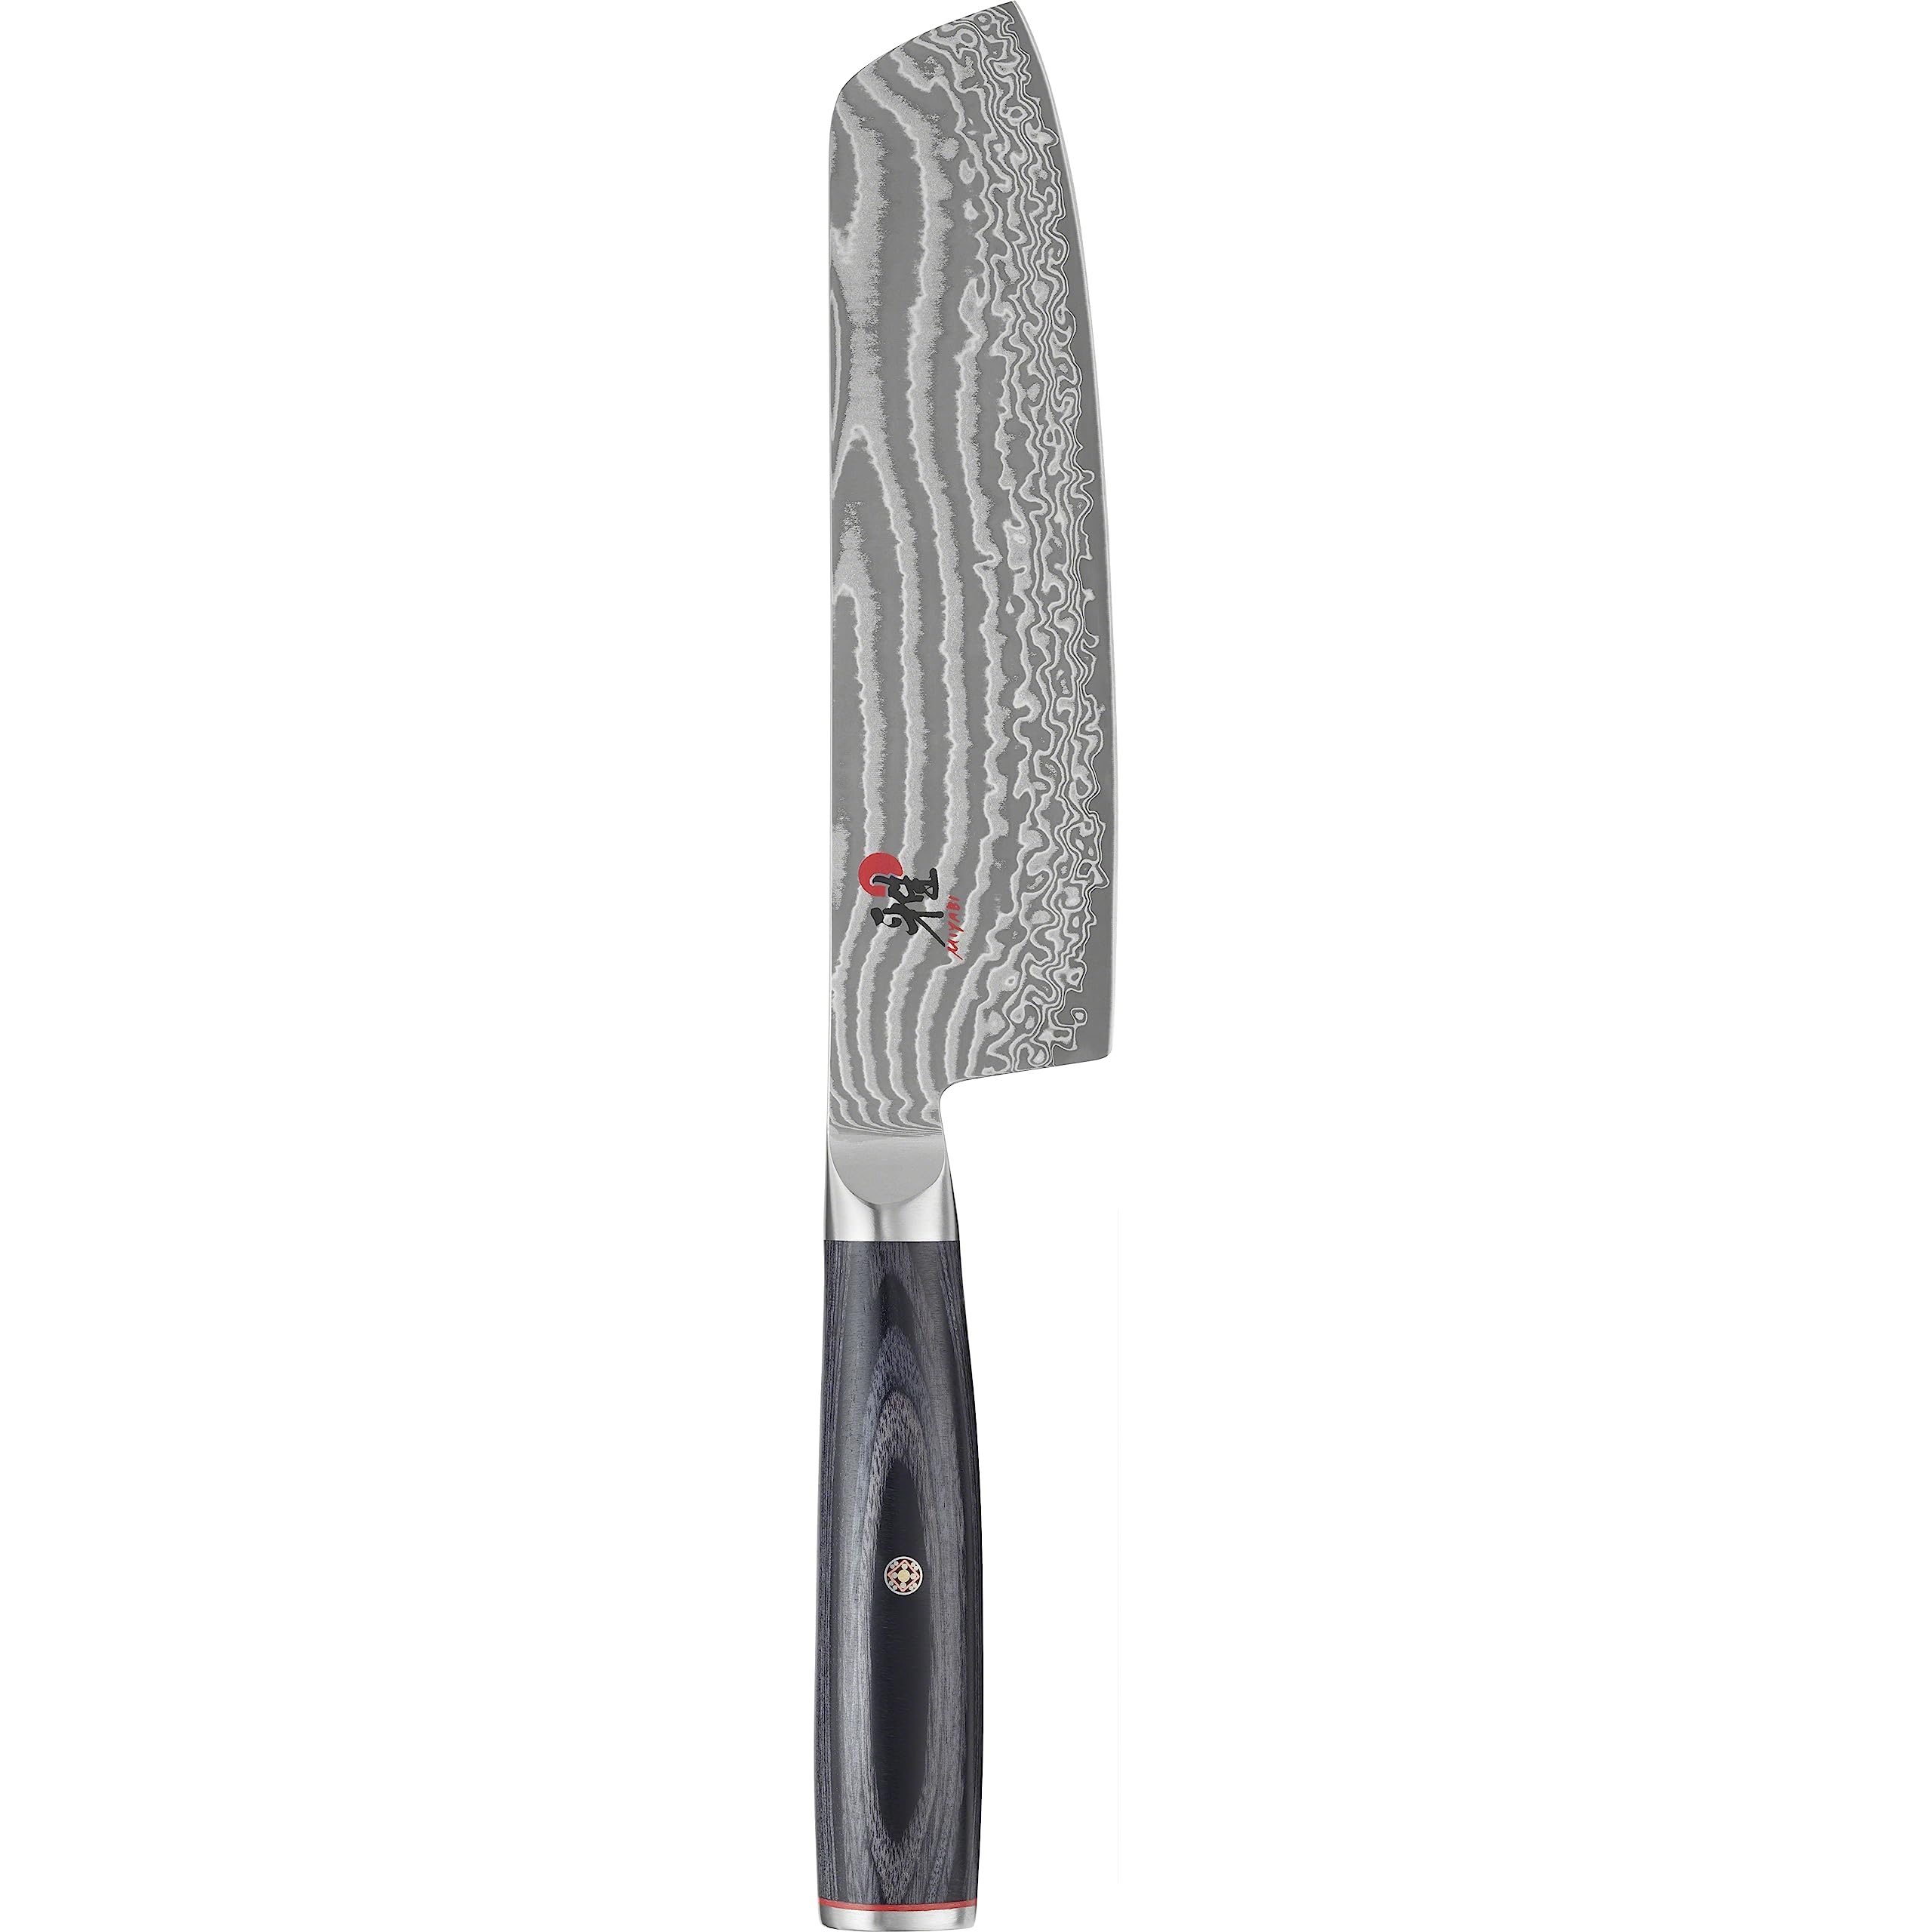 MIYABI Nakiri-Messer Serie 5000FCD Macht selbst einfache Küchentätigkeiten, wie das Schälen und Schneiden von Obst und Gemüse zu einem optischen Erlebnis Klingenlänge 17cm, Schwarz